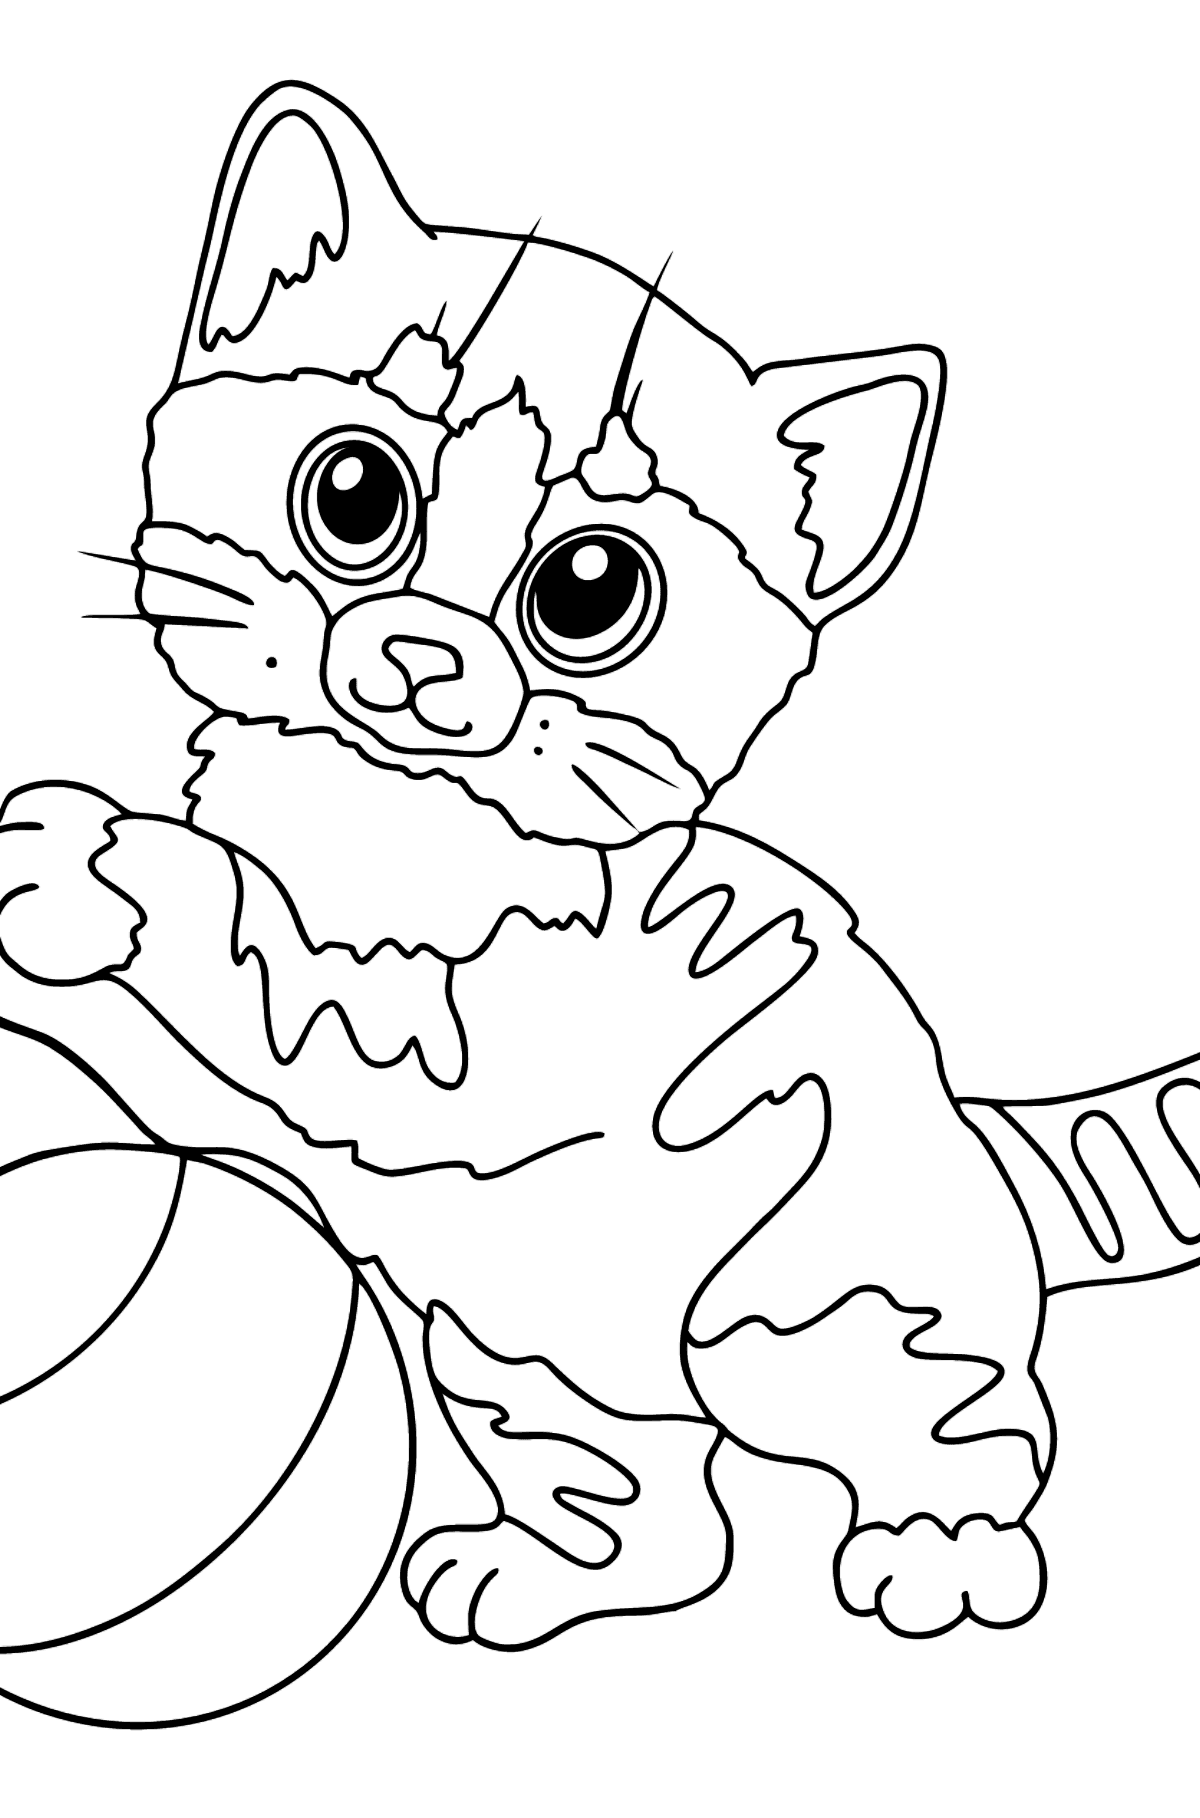 Tegning til fargelegging morsom kattunge - Tegninger til fargelegging for barn